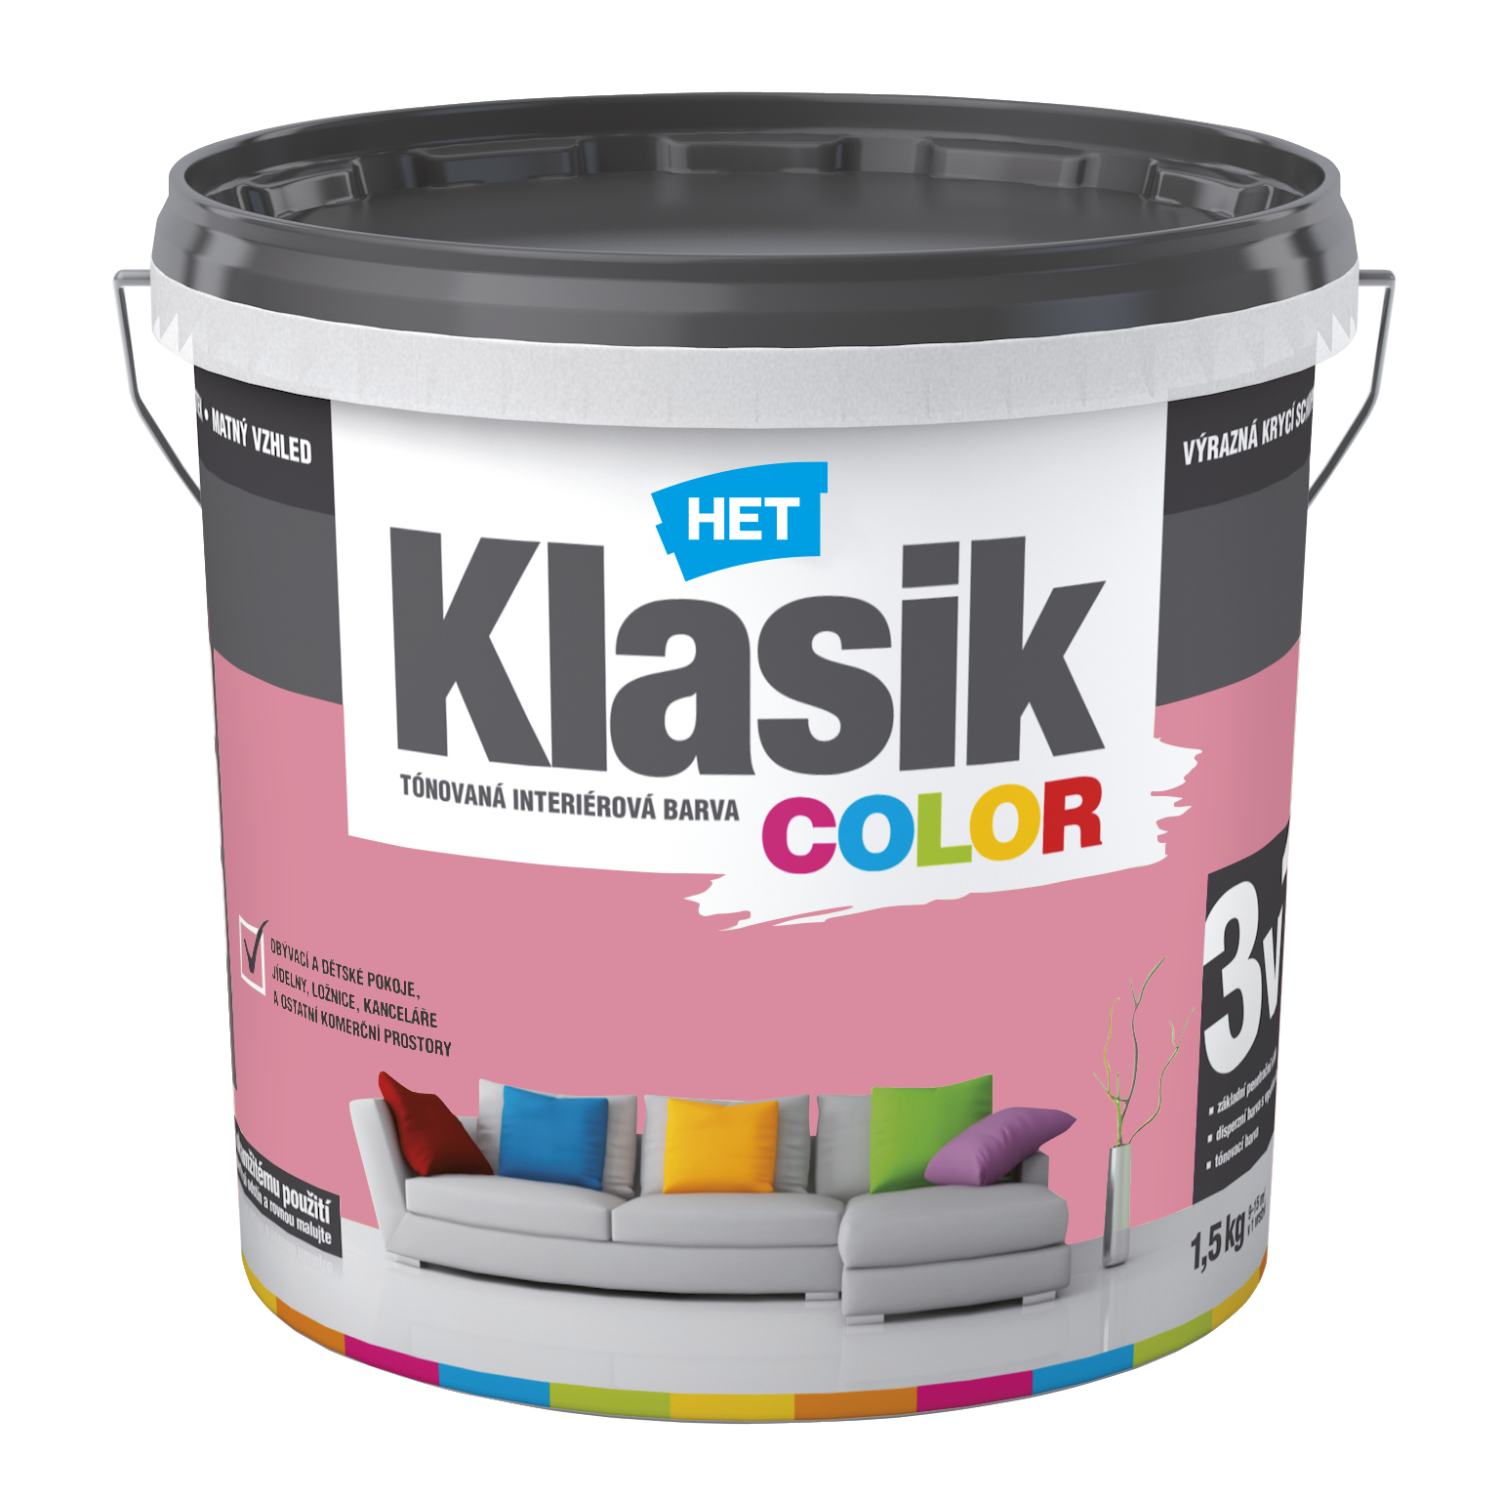 HET Klasik COLOR tónovaná interiérová akrylátová disperzná oteruvzdorná farba 1,5 kg, KC0837 - ružový